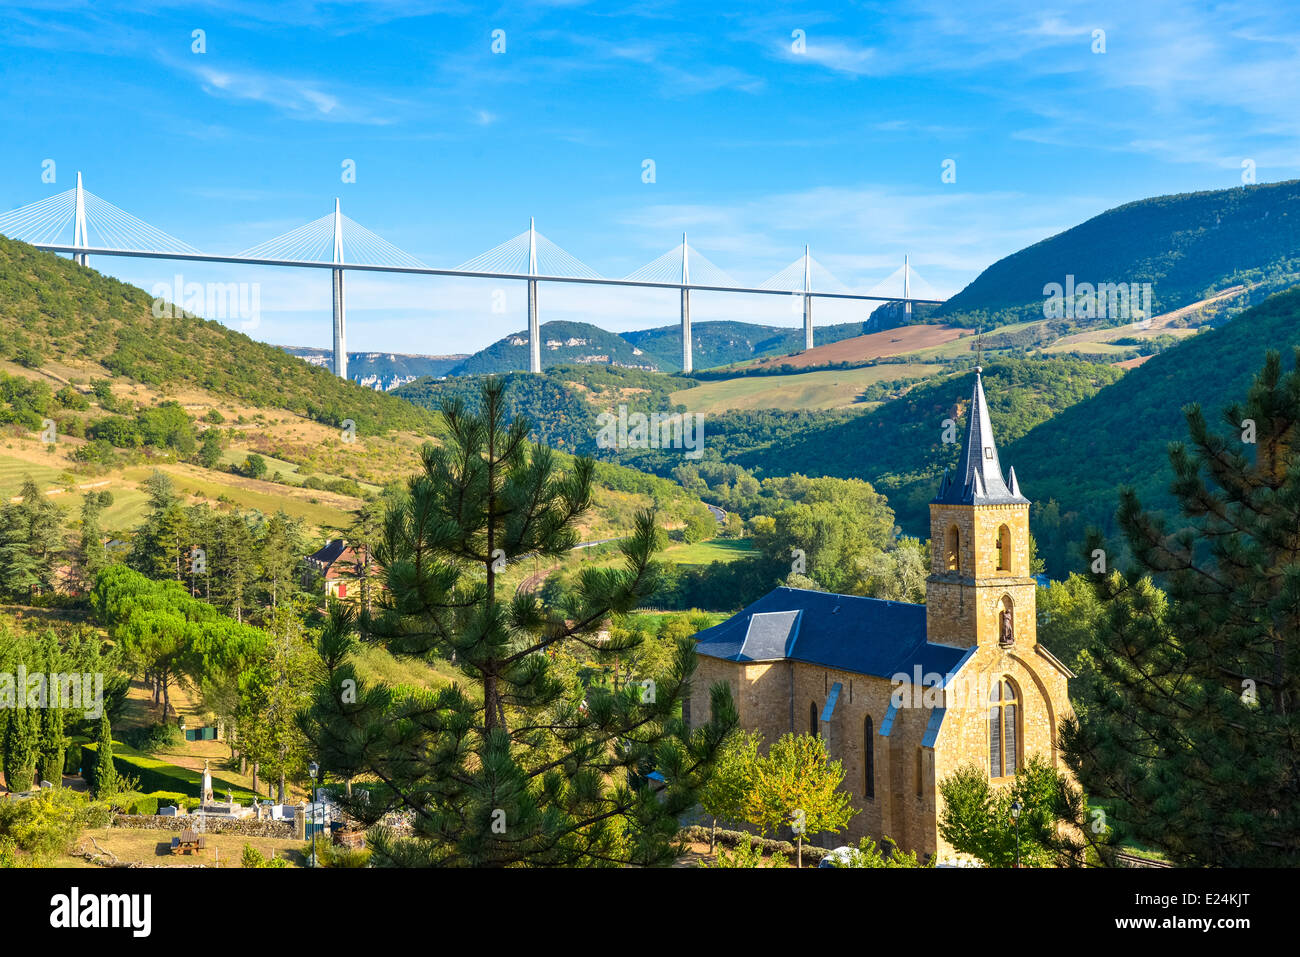 die berühmte Brücke/Viadukt über den Fluss Aveyron in der Nähe von Millau, Frankreich gesehen aus dem Dorf Peyre Stockfoto